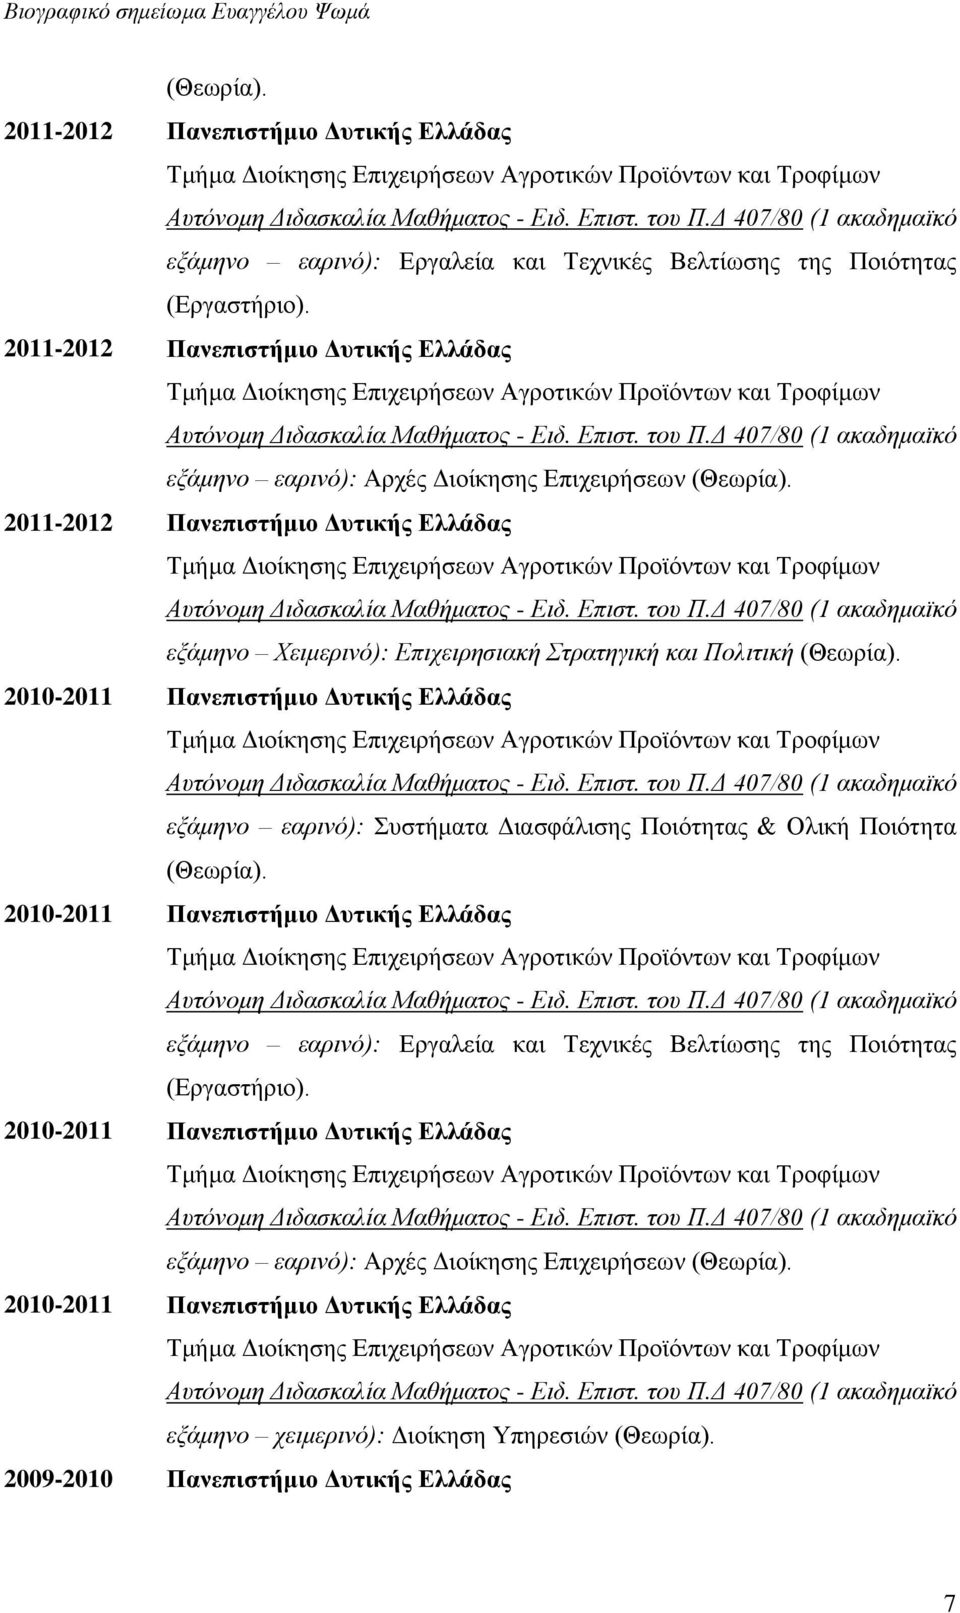 2011-2012 Πανεπιστήμιο Δυτικής Ελλάδας εξάμηνο Χειμερινό): Επιχειρησιακή Στρατηγική και Πολιτική (Θεωρία).